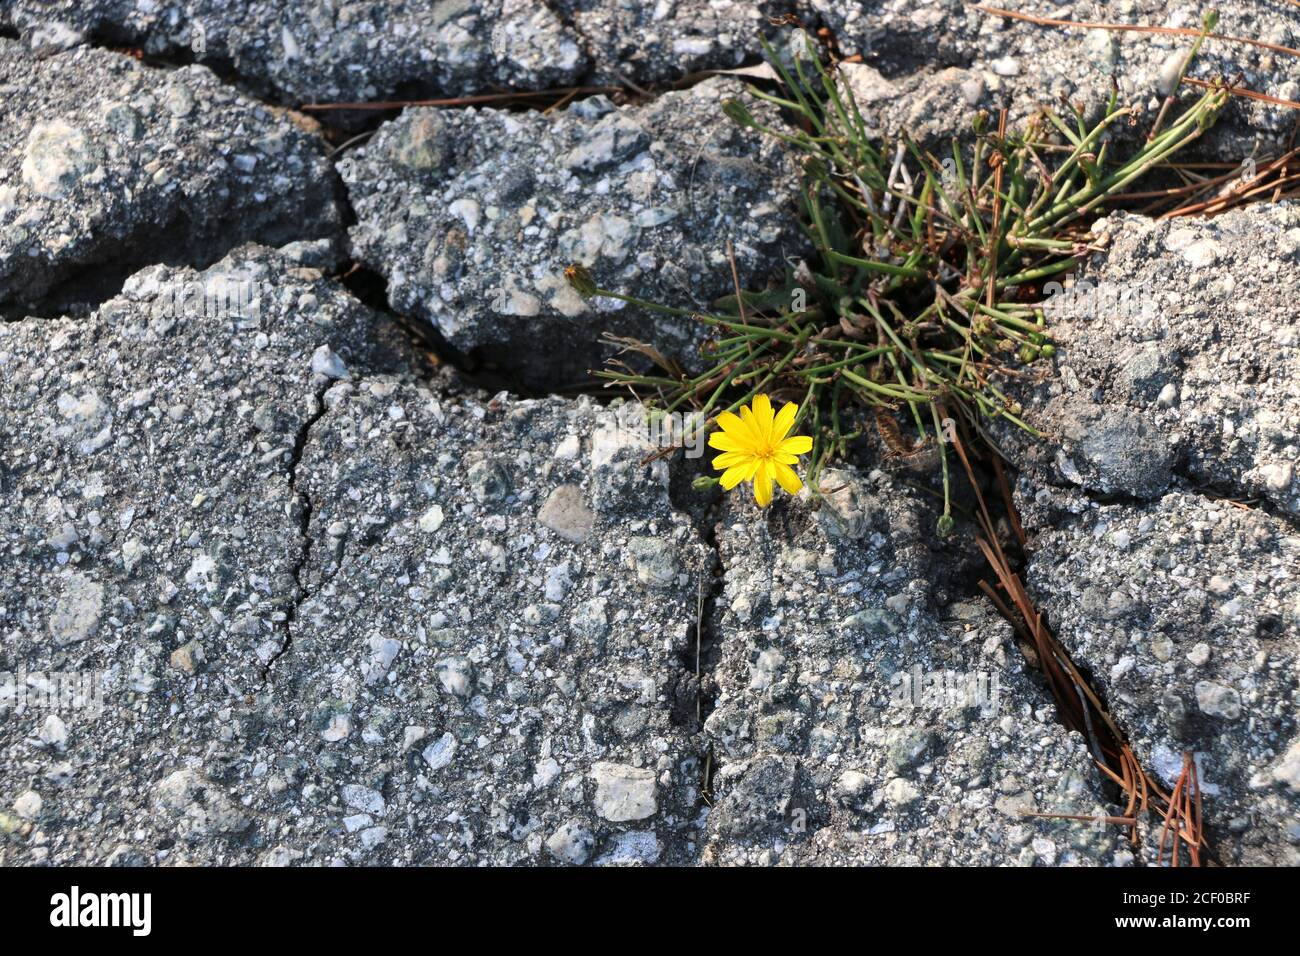 La flor amarilla pequeña y fuerte crece a través del pavimento agrietado, un símbolo de esperanza a través de la adversidad. Foto de stock